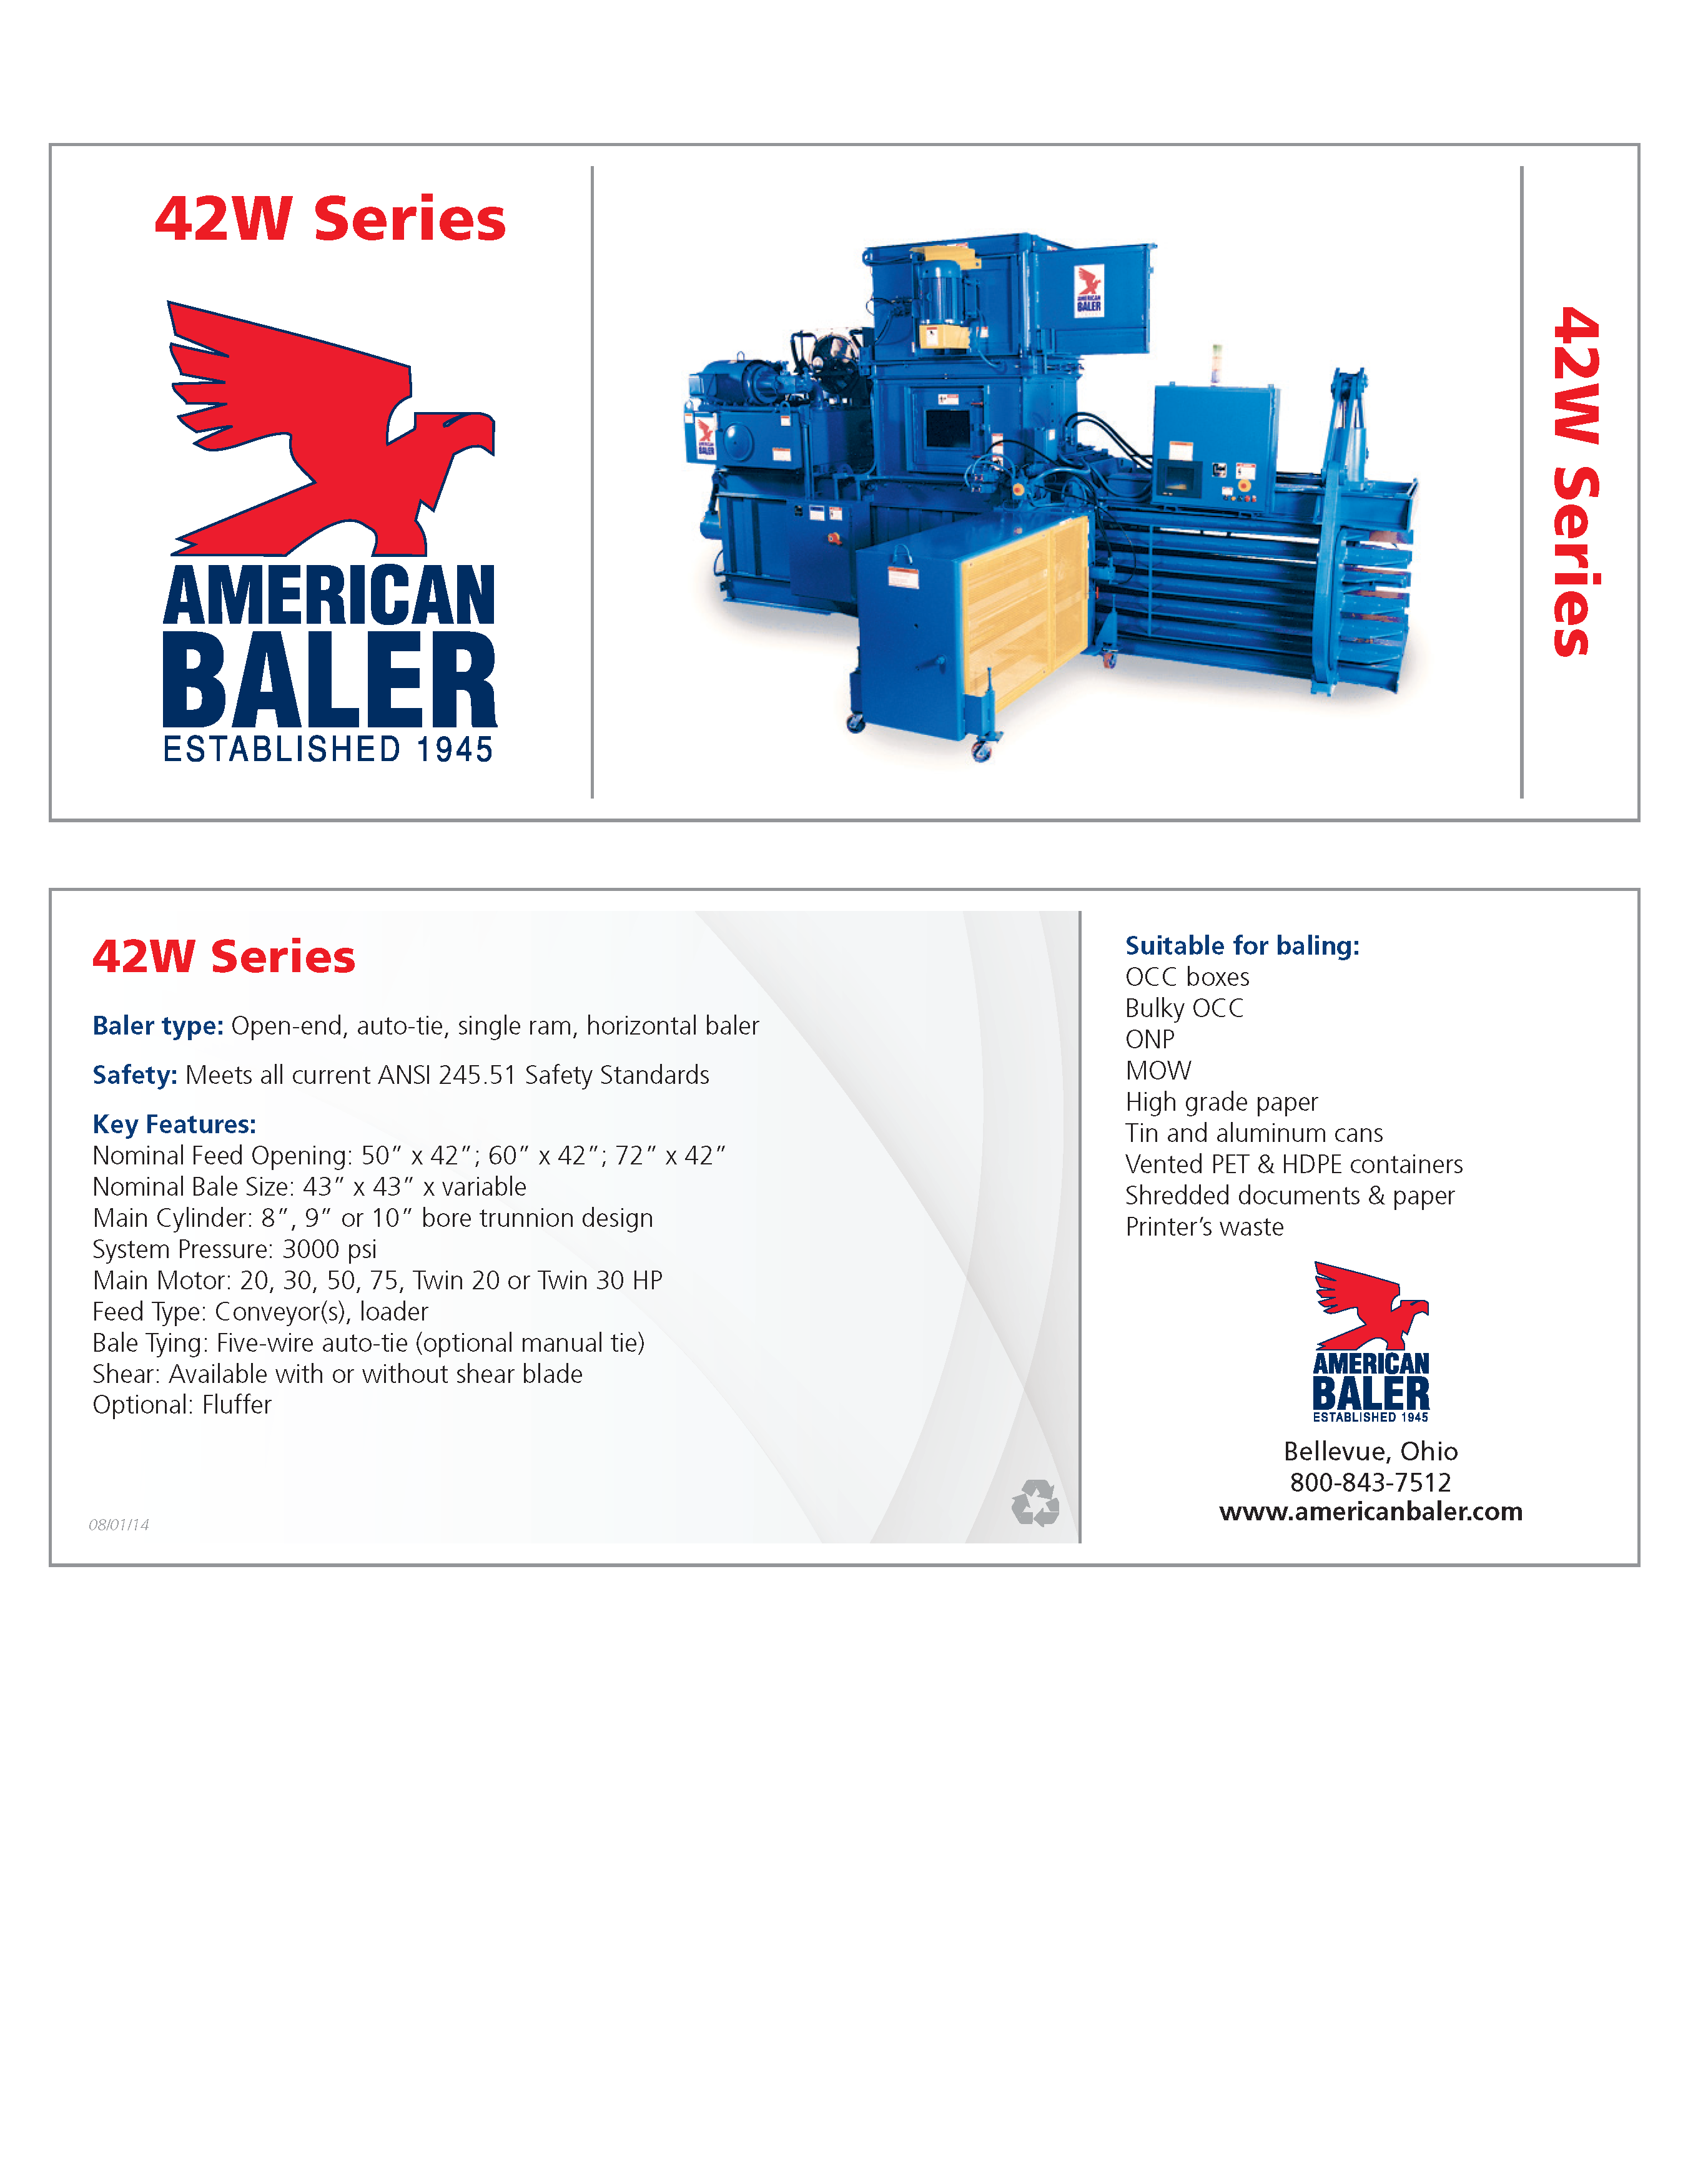 Conozca más acerca de las Compactadoras Serie 42W en el folleto de American Baler.